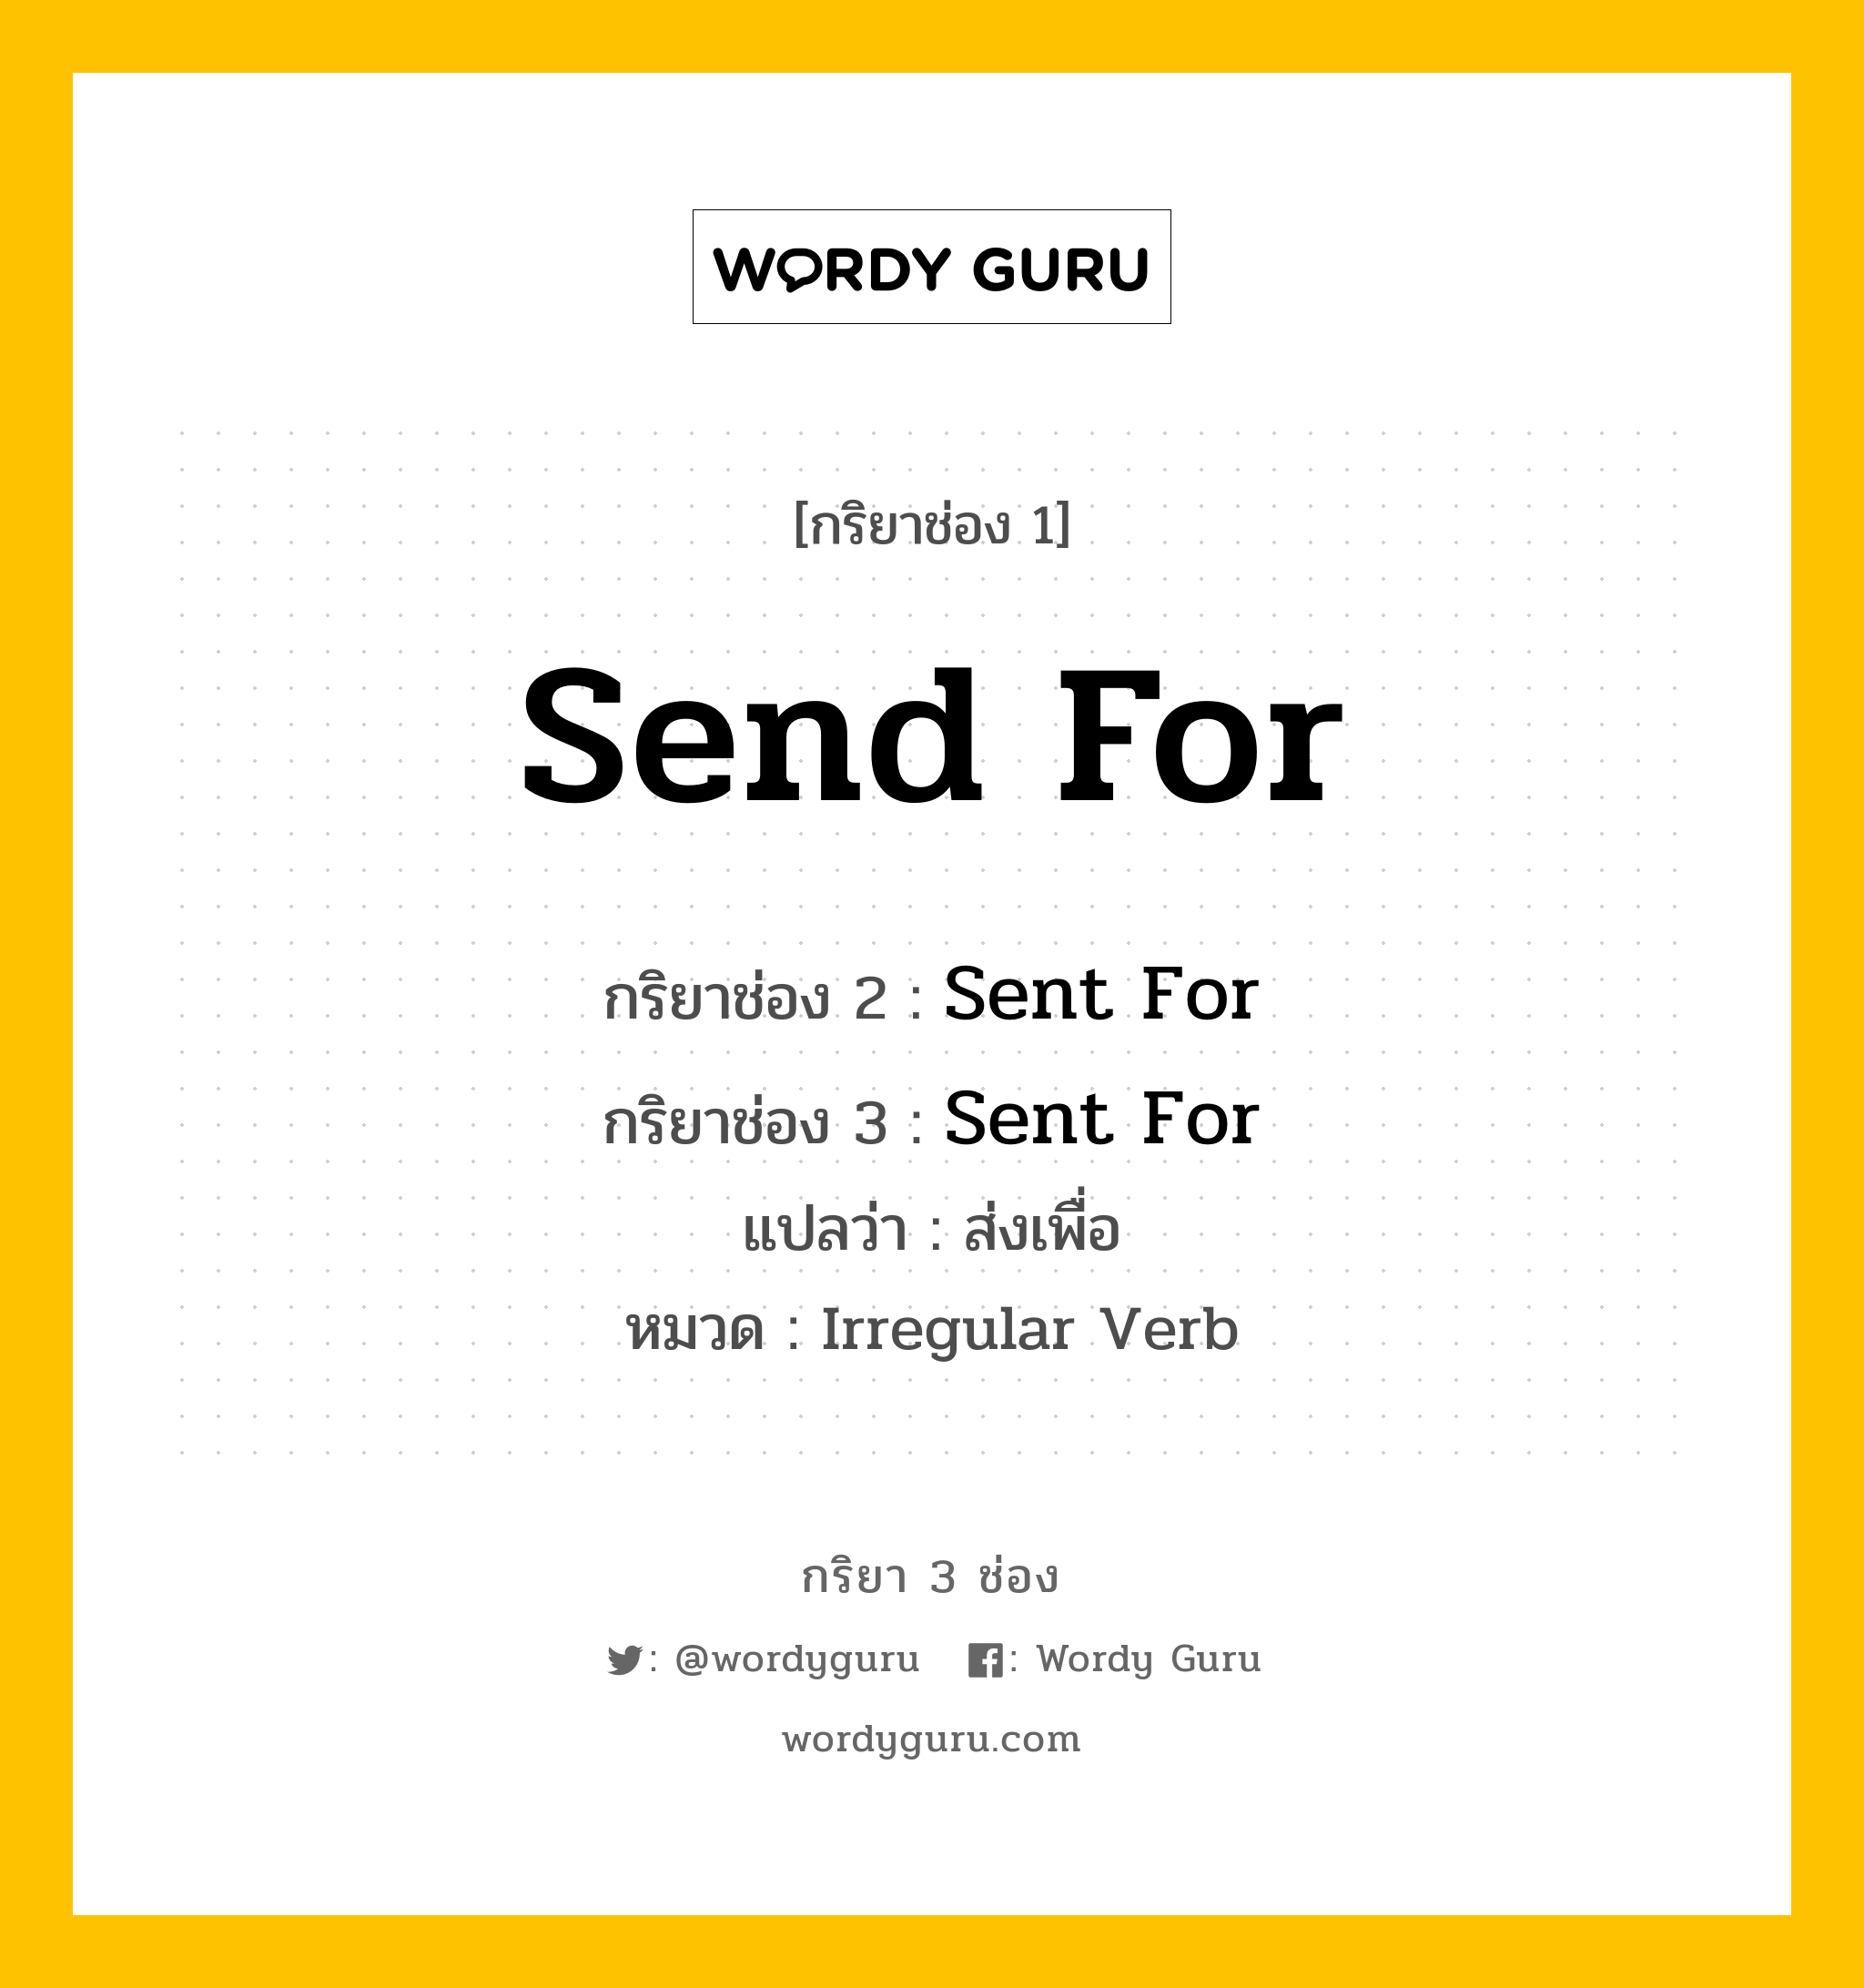 กริยา 3 ช่อง: Send For ช่อง 2 Send For ช่อง 3 คืออะไร, กริยาช่อง 1 Send For กริยาช่อง 2 Sent For กริยาช่อง 3 Sent For แปลว่า ส่งเพื่อ หมวด Irregular Verb หมวด Irregular Verb